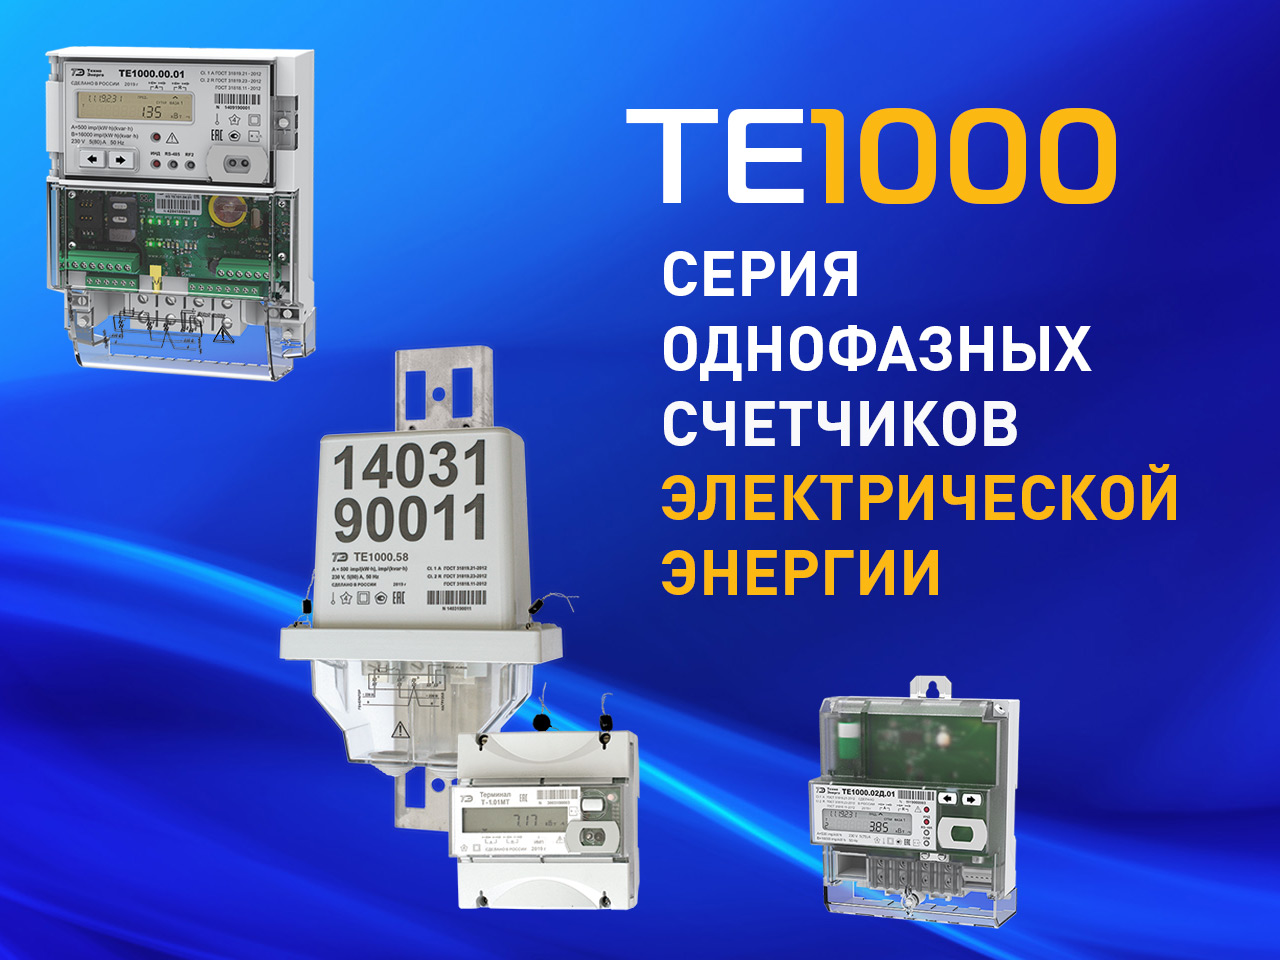 Новая серия однофазных счетчиков электроэнергии ТЕ1000